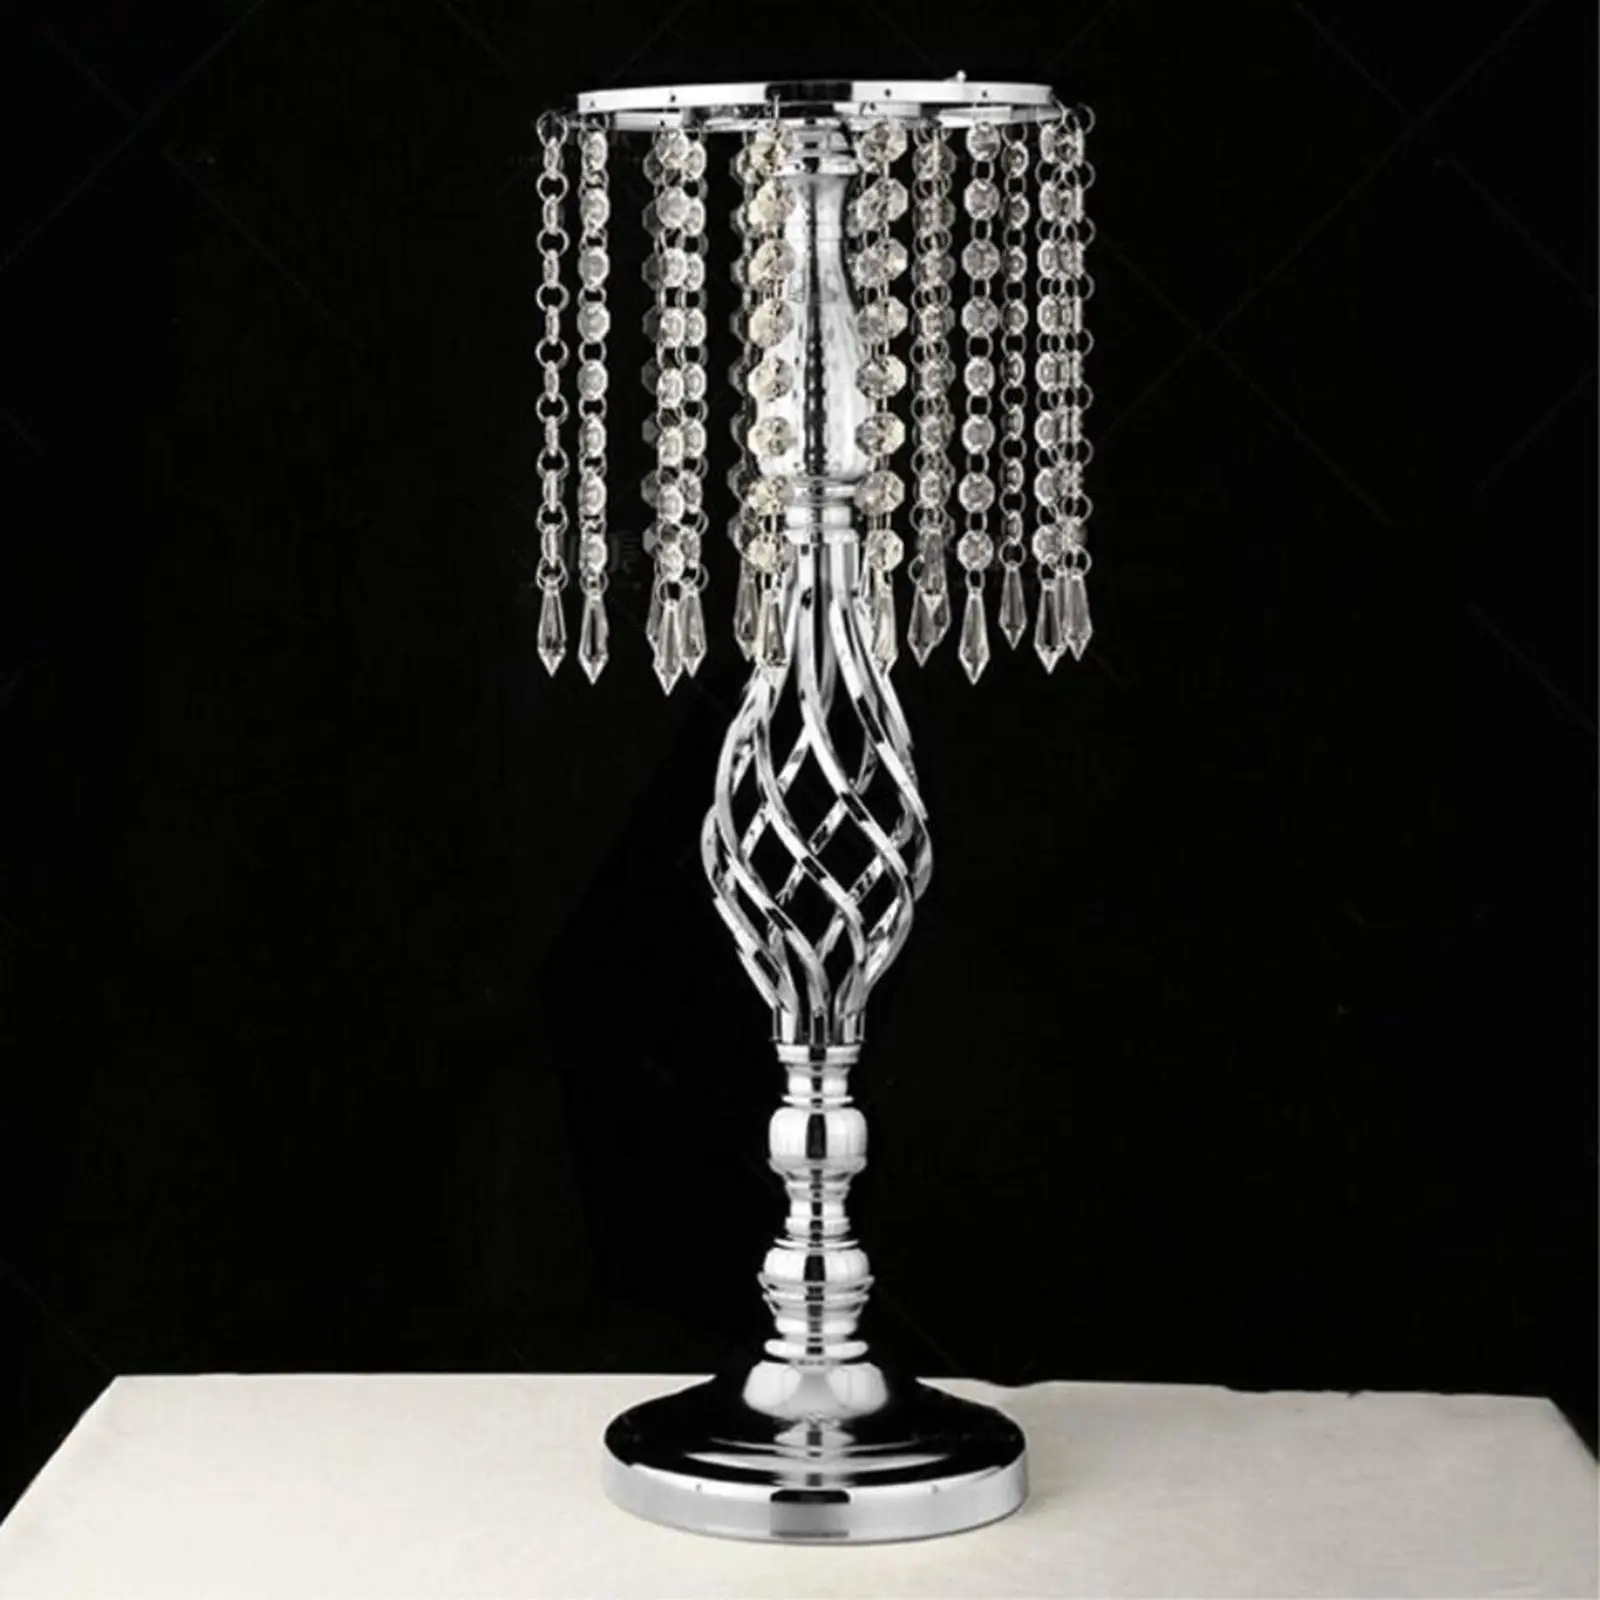 Versatile Luxury Wedding Candles Holder Centerpiece Candlesticks Birthday